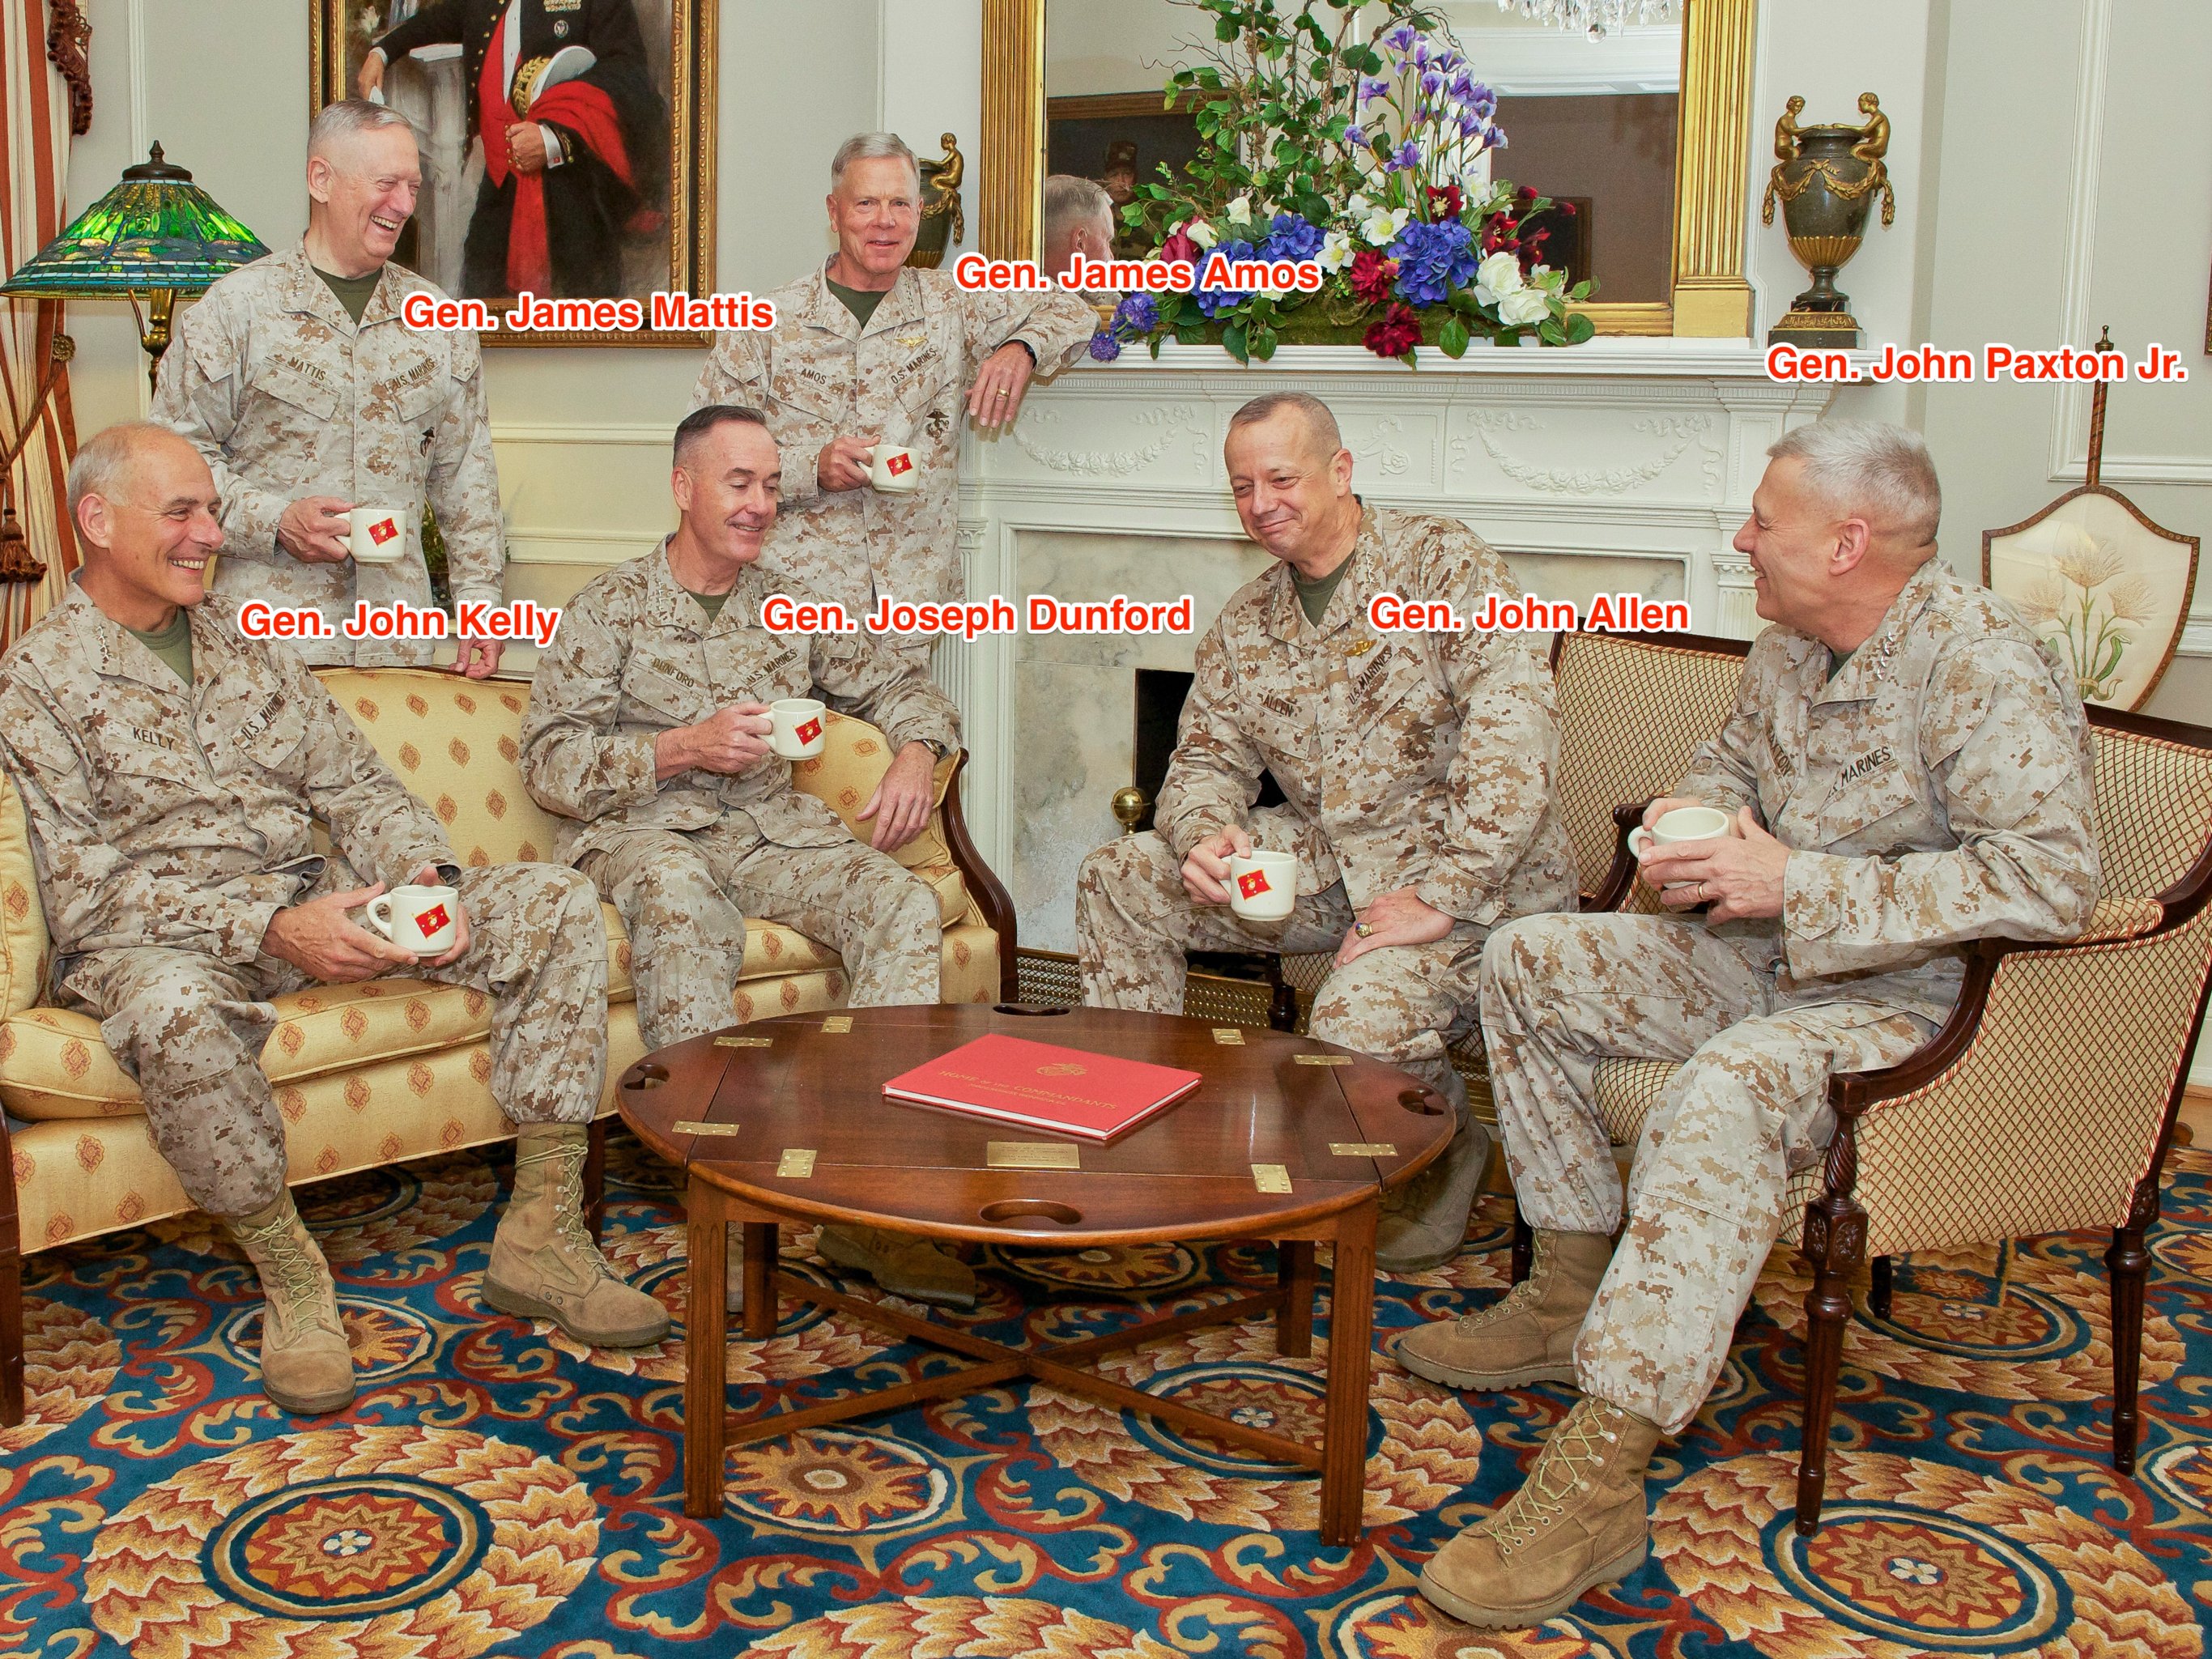 Van links naar rechts: Gen. John Kelly, Gen. James Mattis, Gen. Joseph Dunford, Gen. James Amos, Gen. John Allen em Gen. John Paxton Jr. Foto uit 2013.